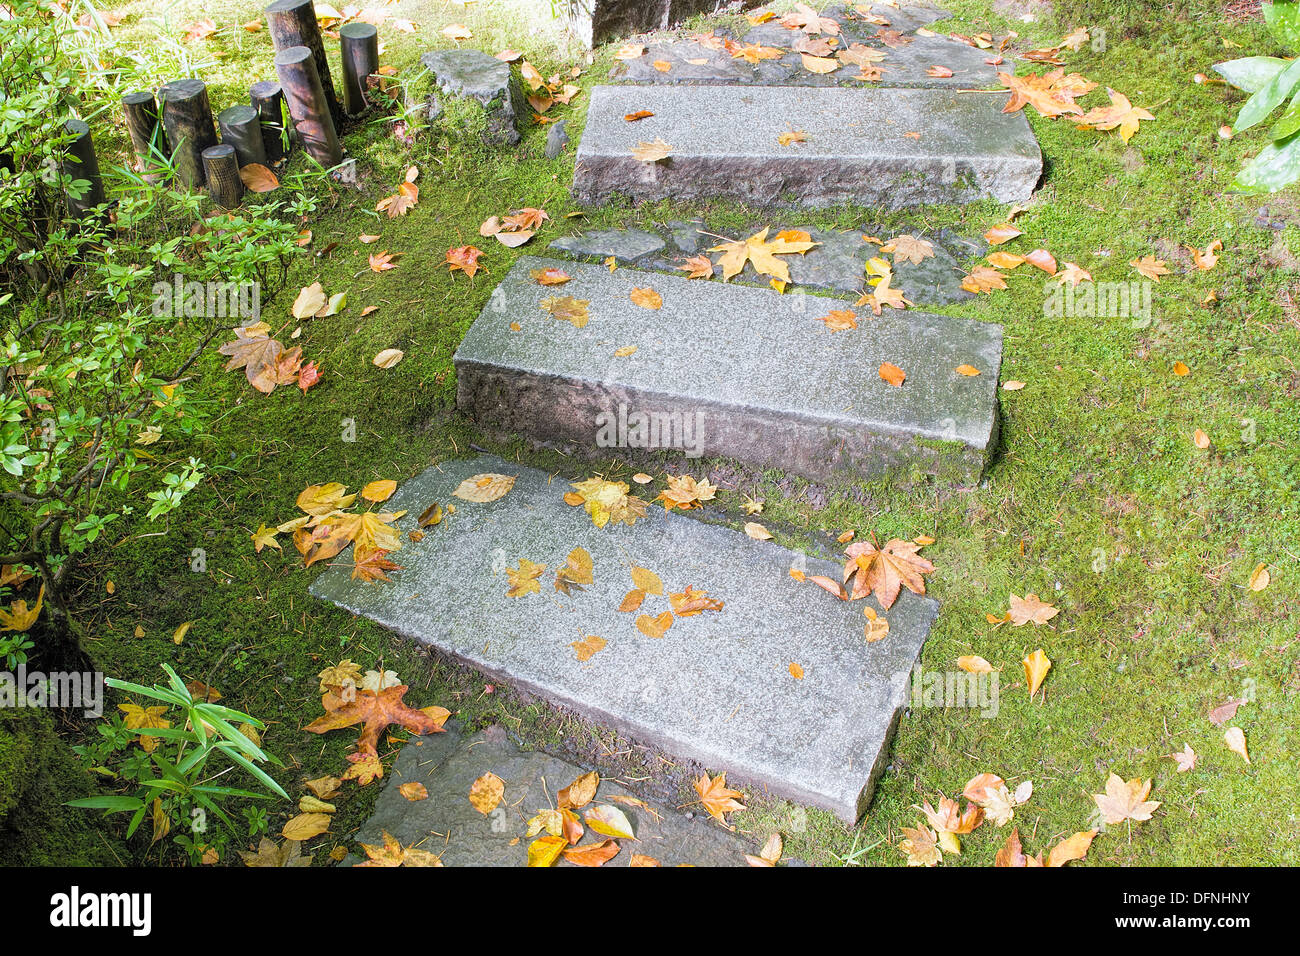 Jardin d'inspiration asiatique de granit marches de pierre avec de la mousse et les feuilles d'automne Banque D'Images